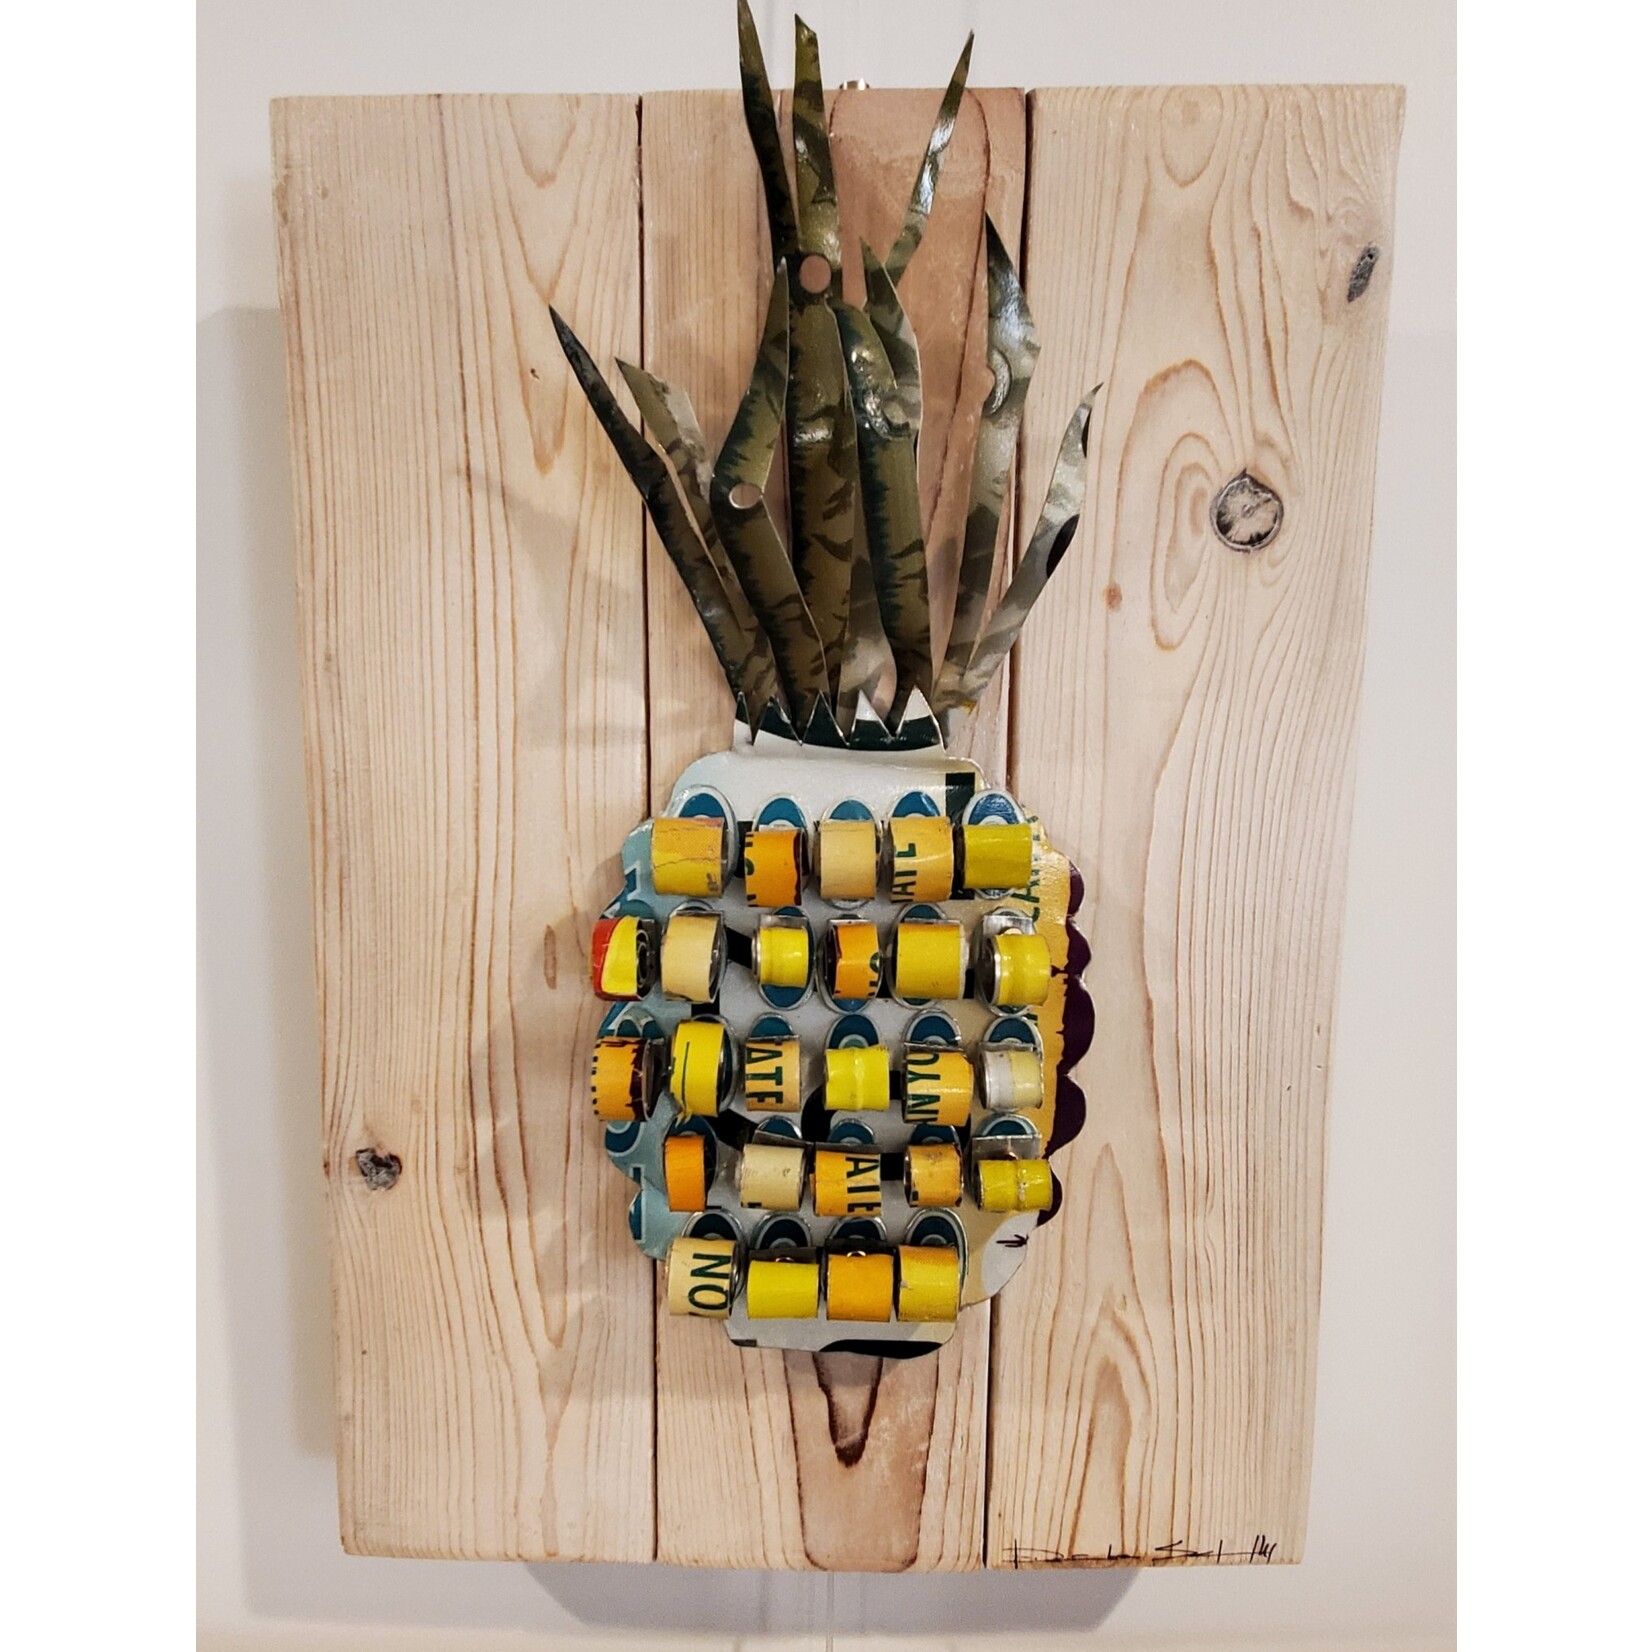 Daniela Schnebly "Pineapple #2" - mixed media - 17x15"